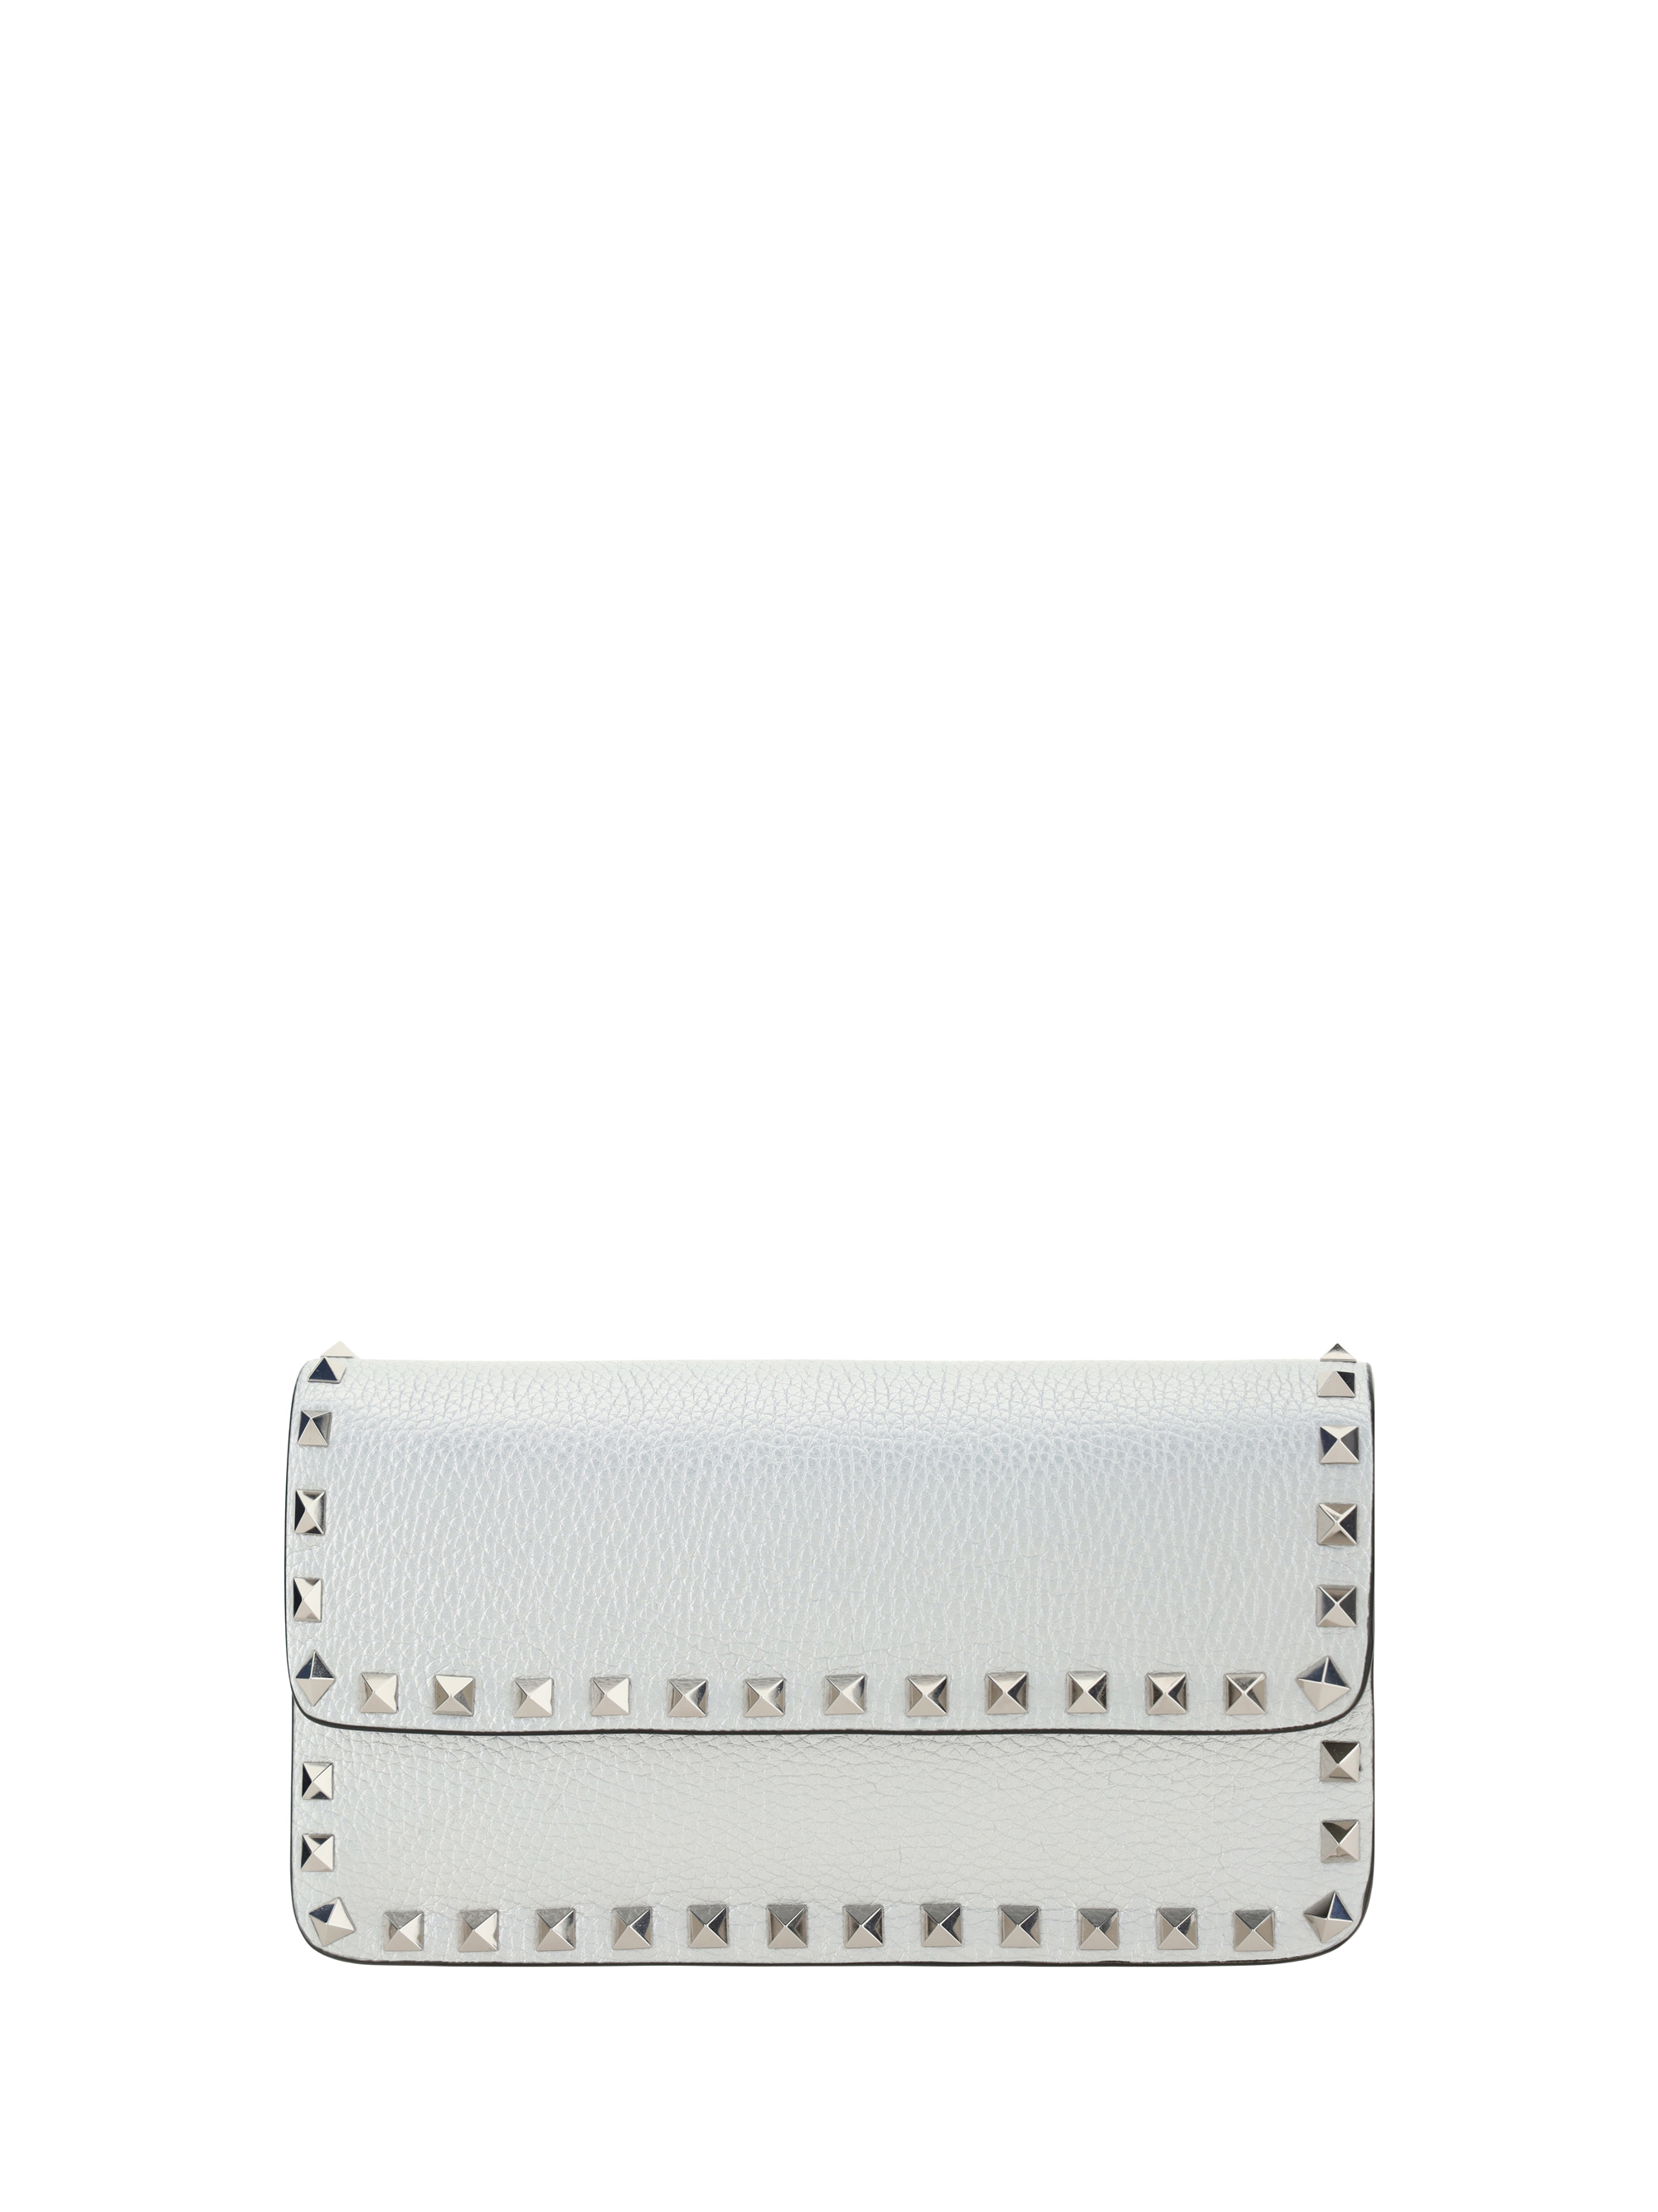 Valentino Garavani Rockstud Handbag In Silver